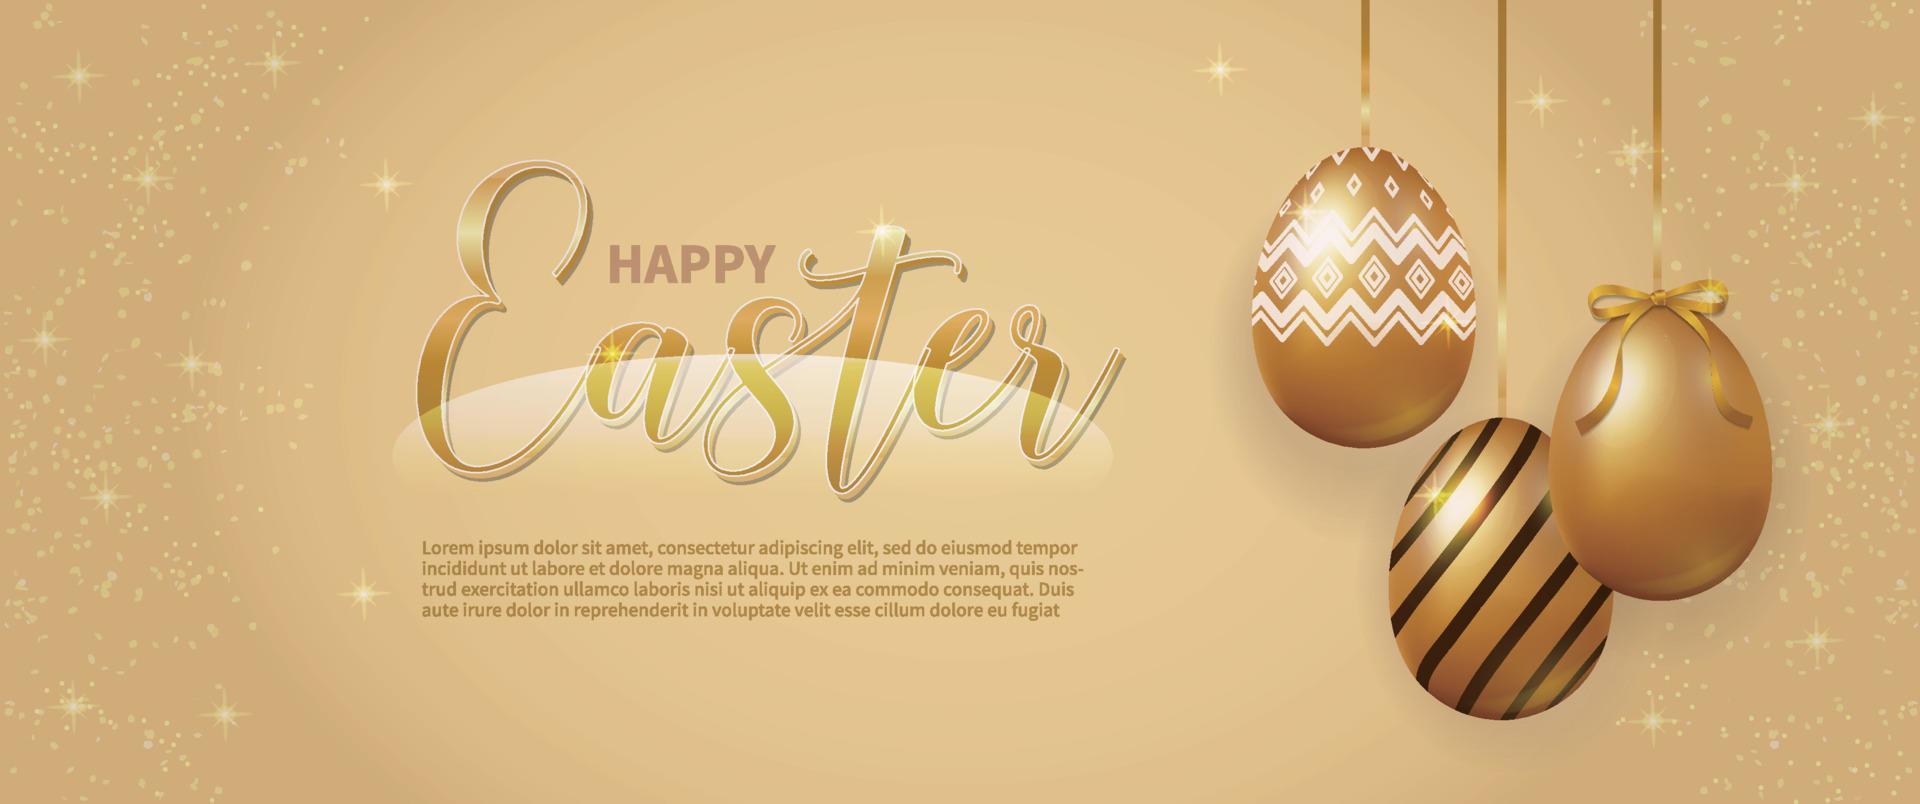 dorado contento Pascua de Resurrección huevo bandera vector